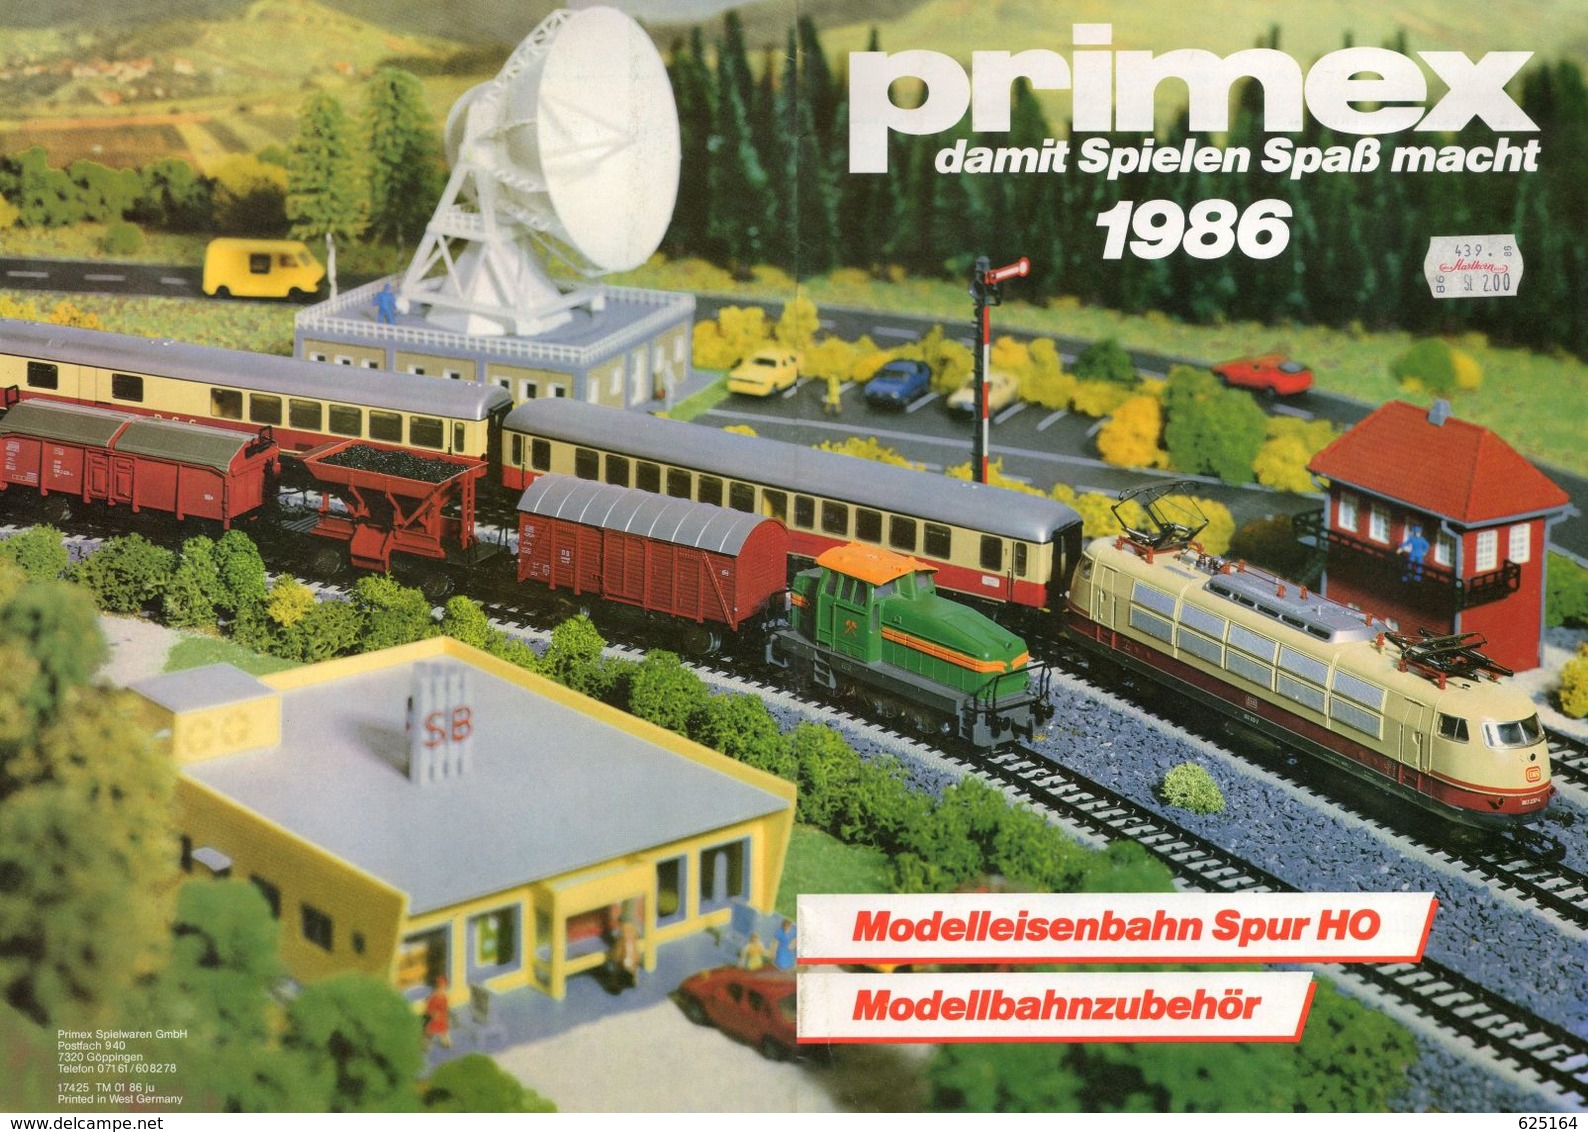 Catalogue PRIMEX 1986 Damt Spielen Spaß Macht Modellbahnzubehör Märklin HO - Duits